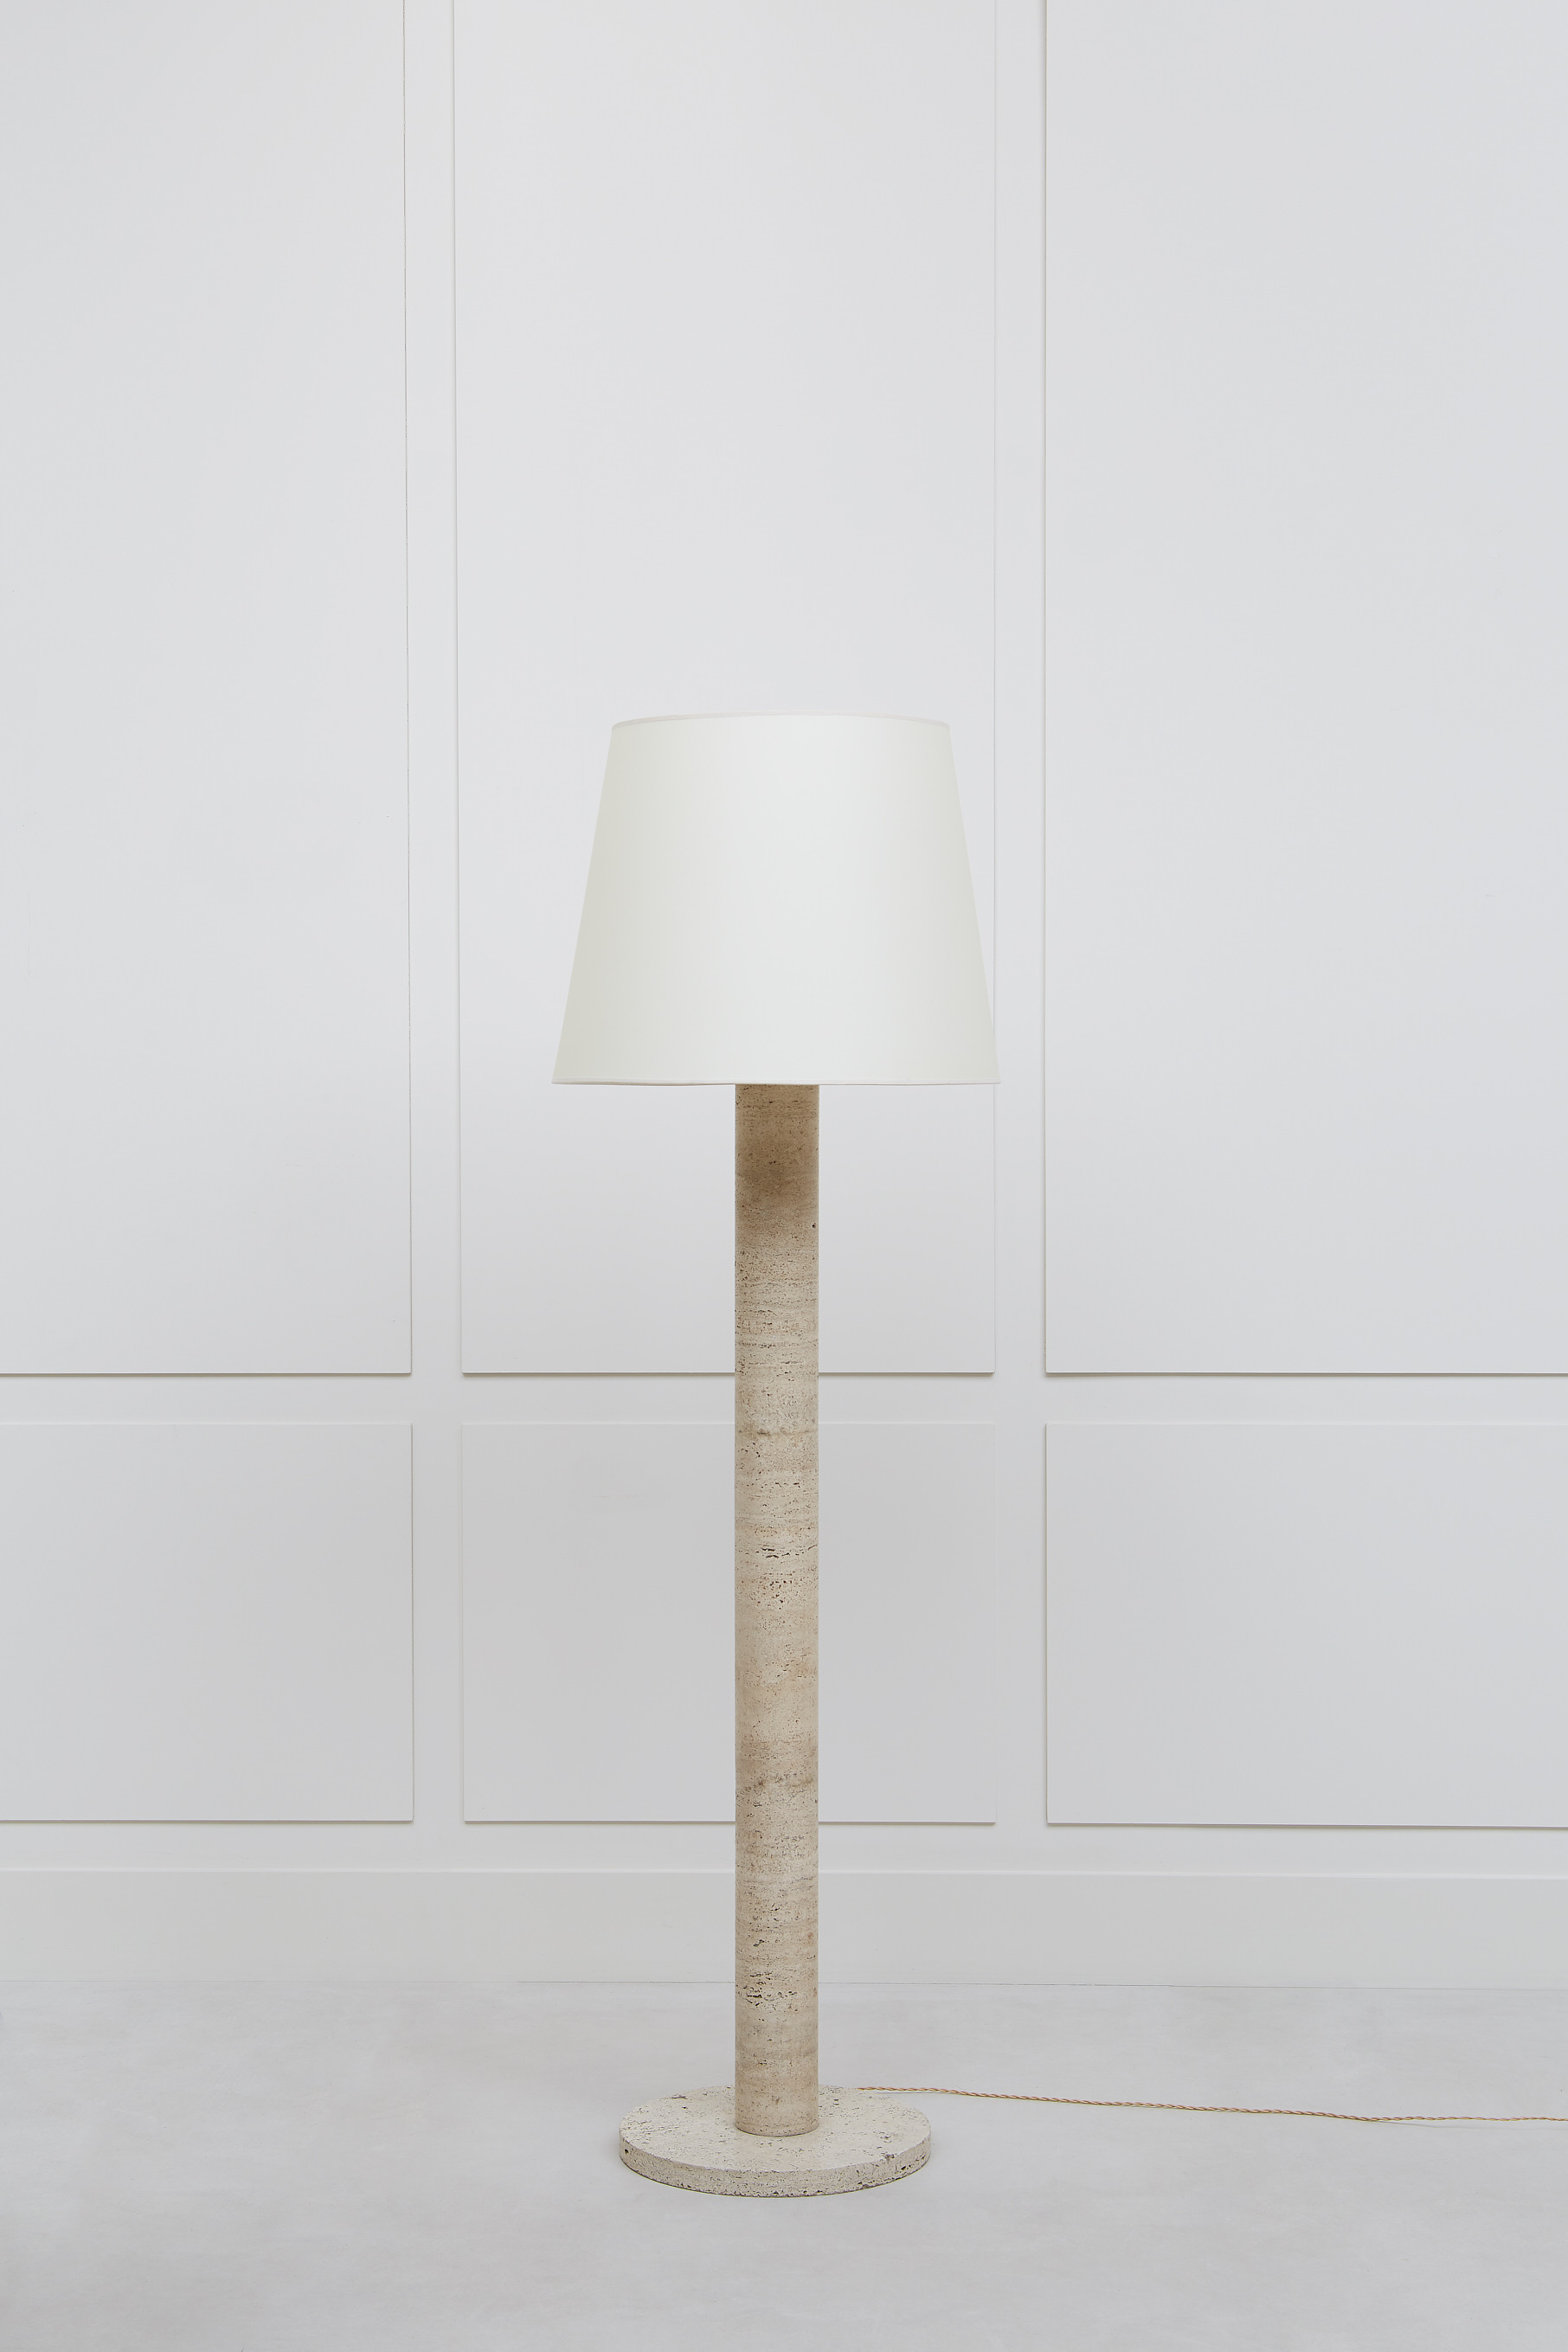 Michel Roux-Spitz, floor lamp, vue 01